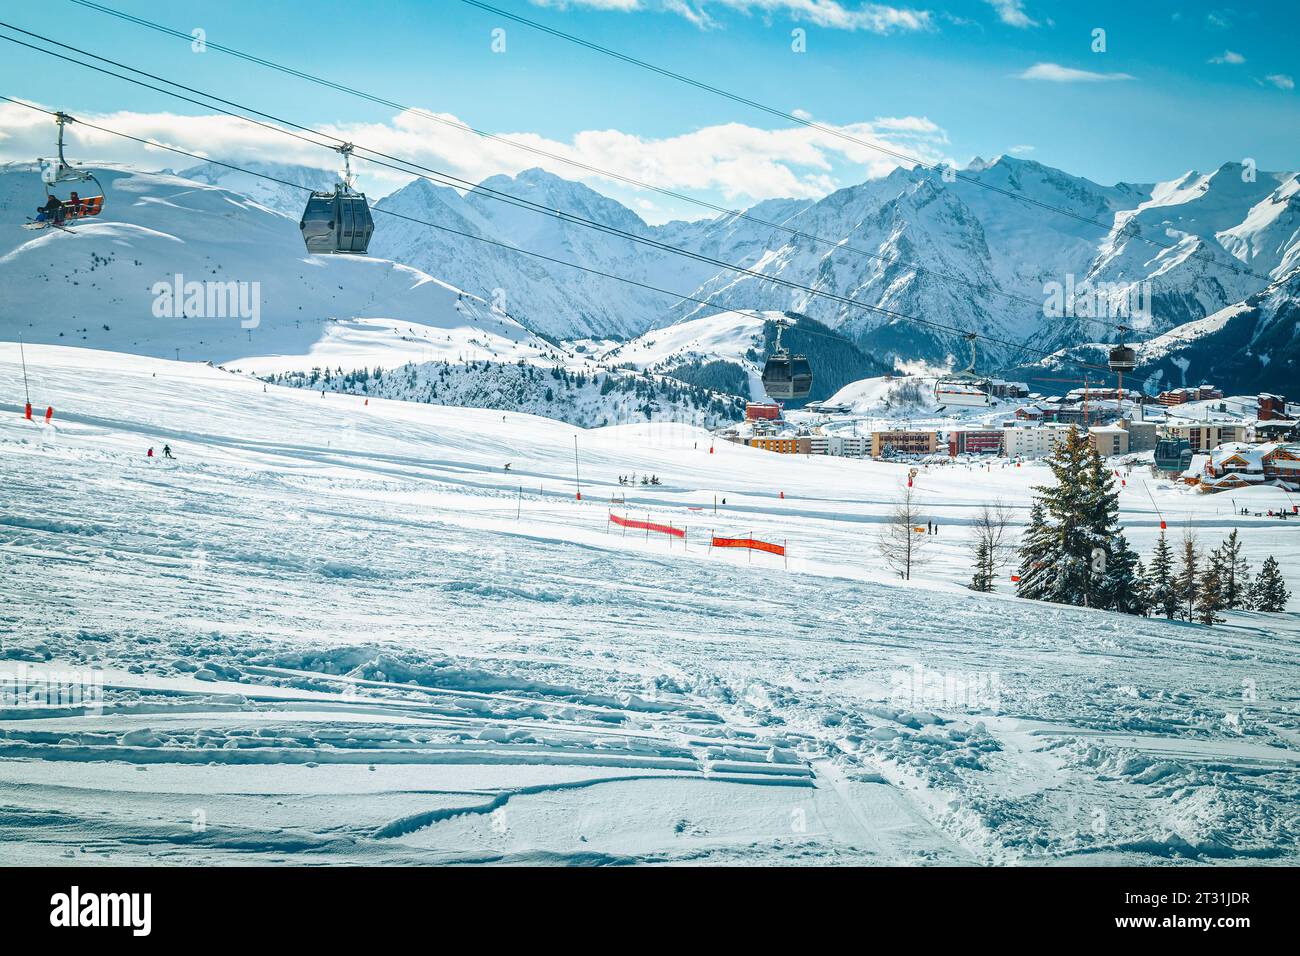 Fantastico campo da sci con piste da sci sulle fresche e profonde colline innevate. Stazione sciistica invernale con sciatori e funivie, Alpe d Huez, Francia, Europa Foto Stock